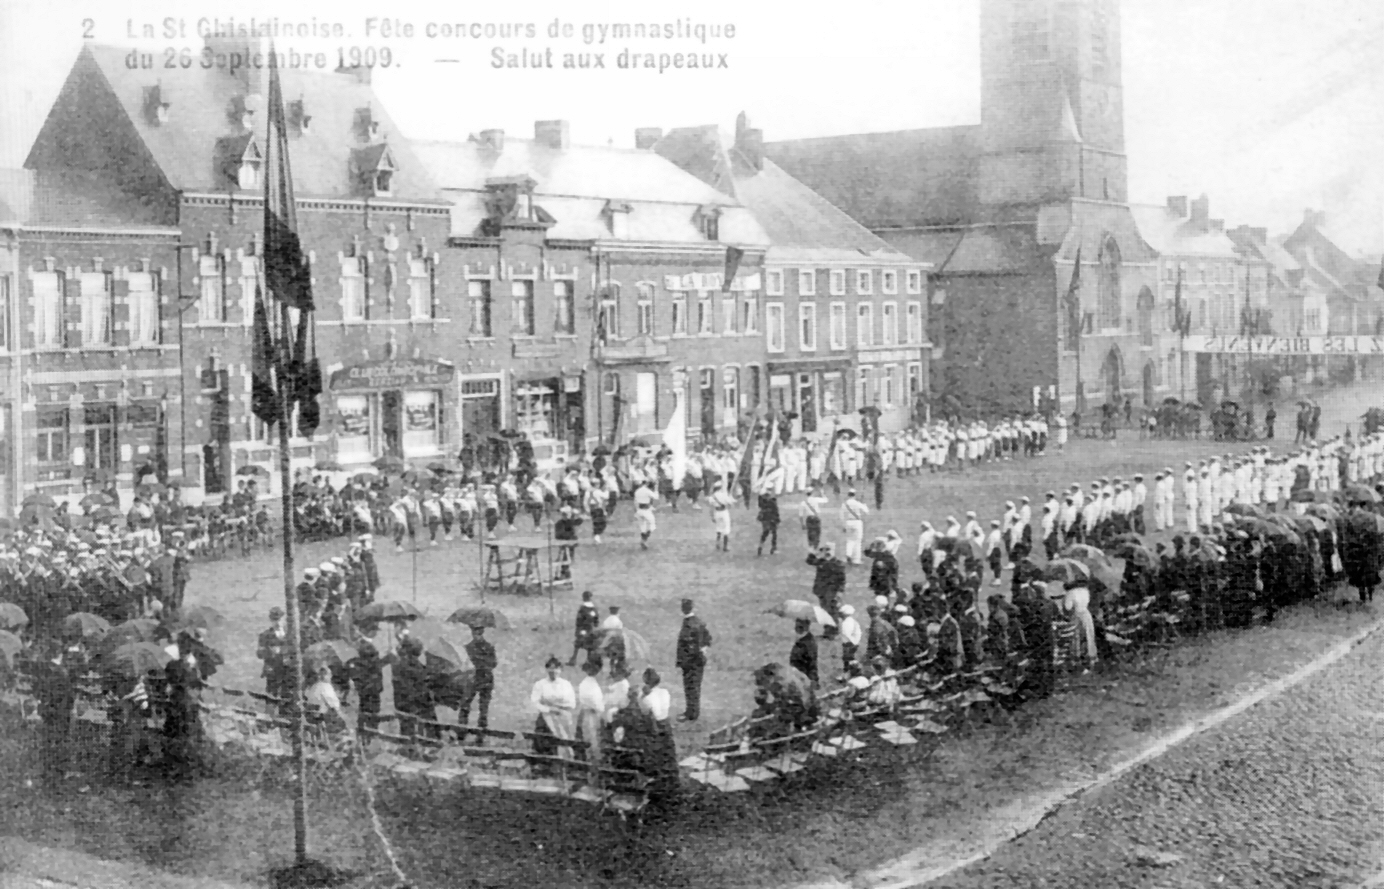 Saint-Ghislain : fête coucours de gymnastique du 26/09/1909. Le salut aux drapeaux.